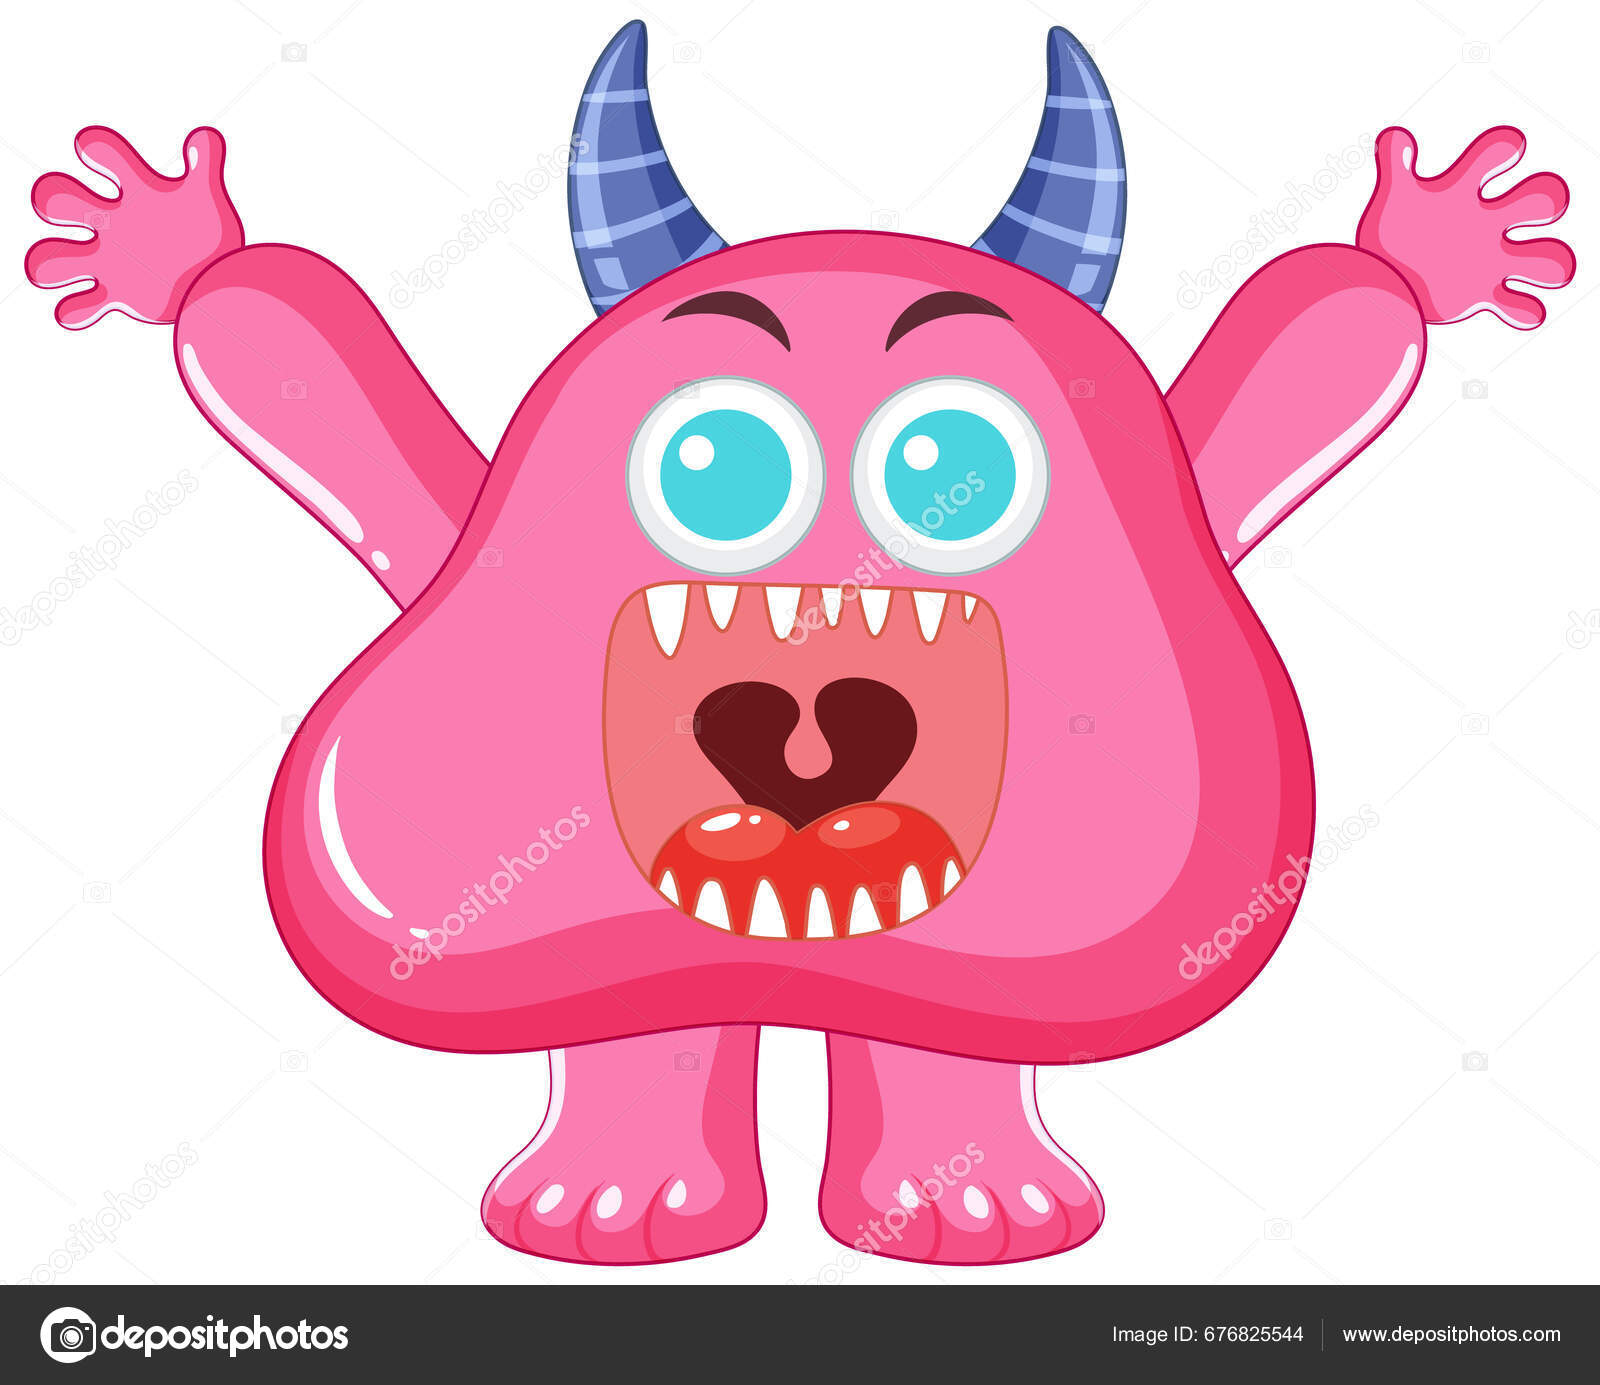 Personagem de desenho animado monstro alienígena roxo com chifre